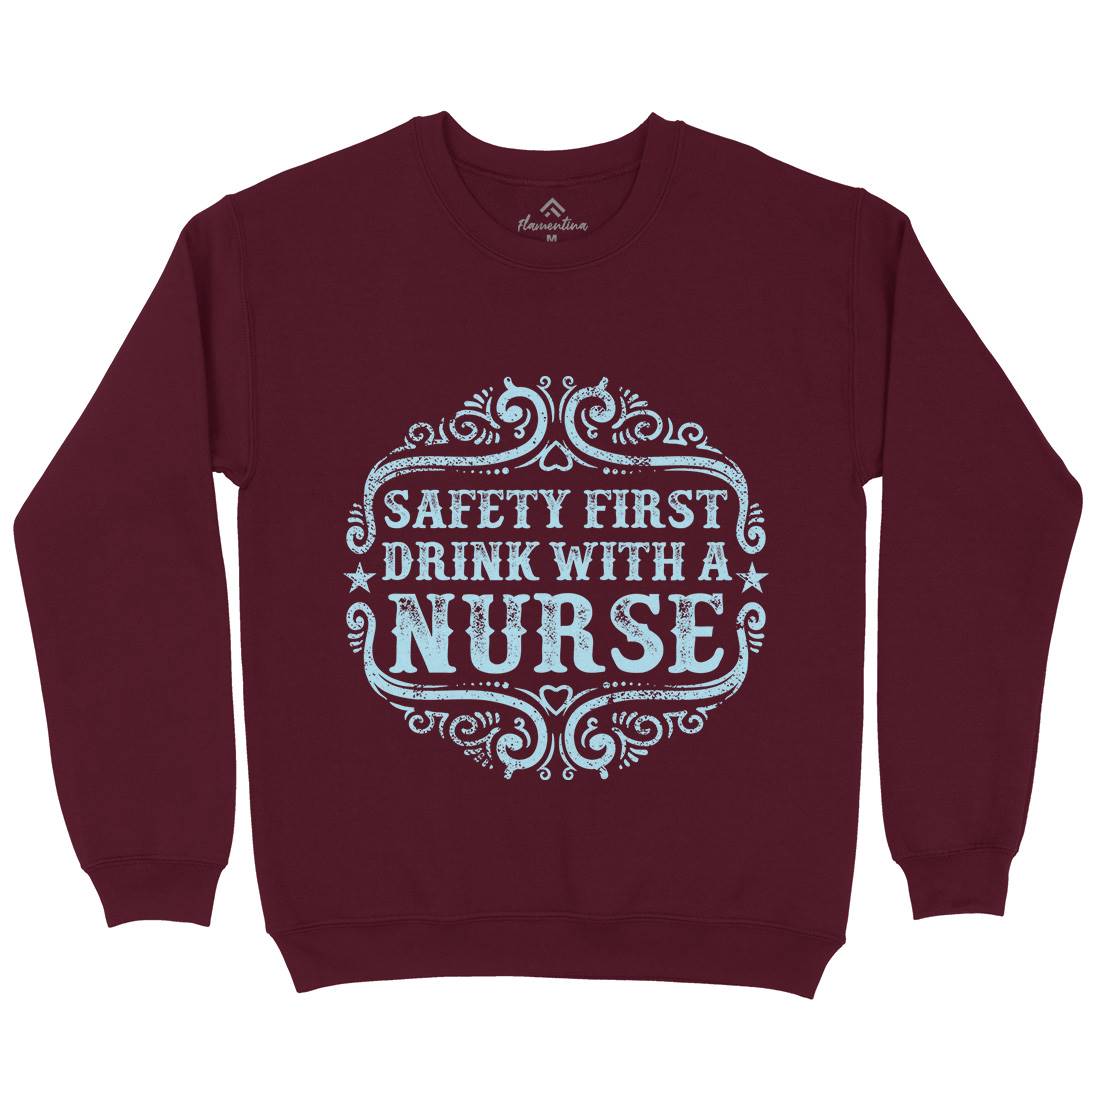 Drink With A Nurse Kids Crew Neck Sweatshirt Work C926